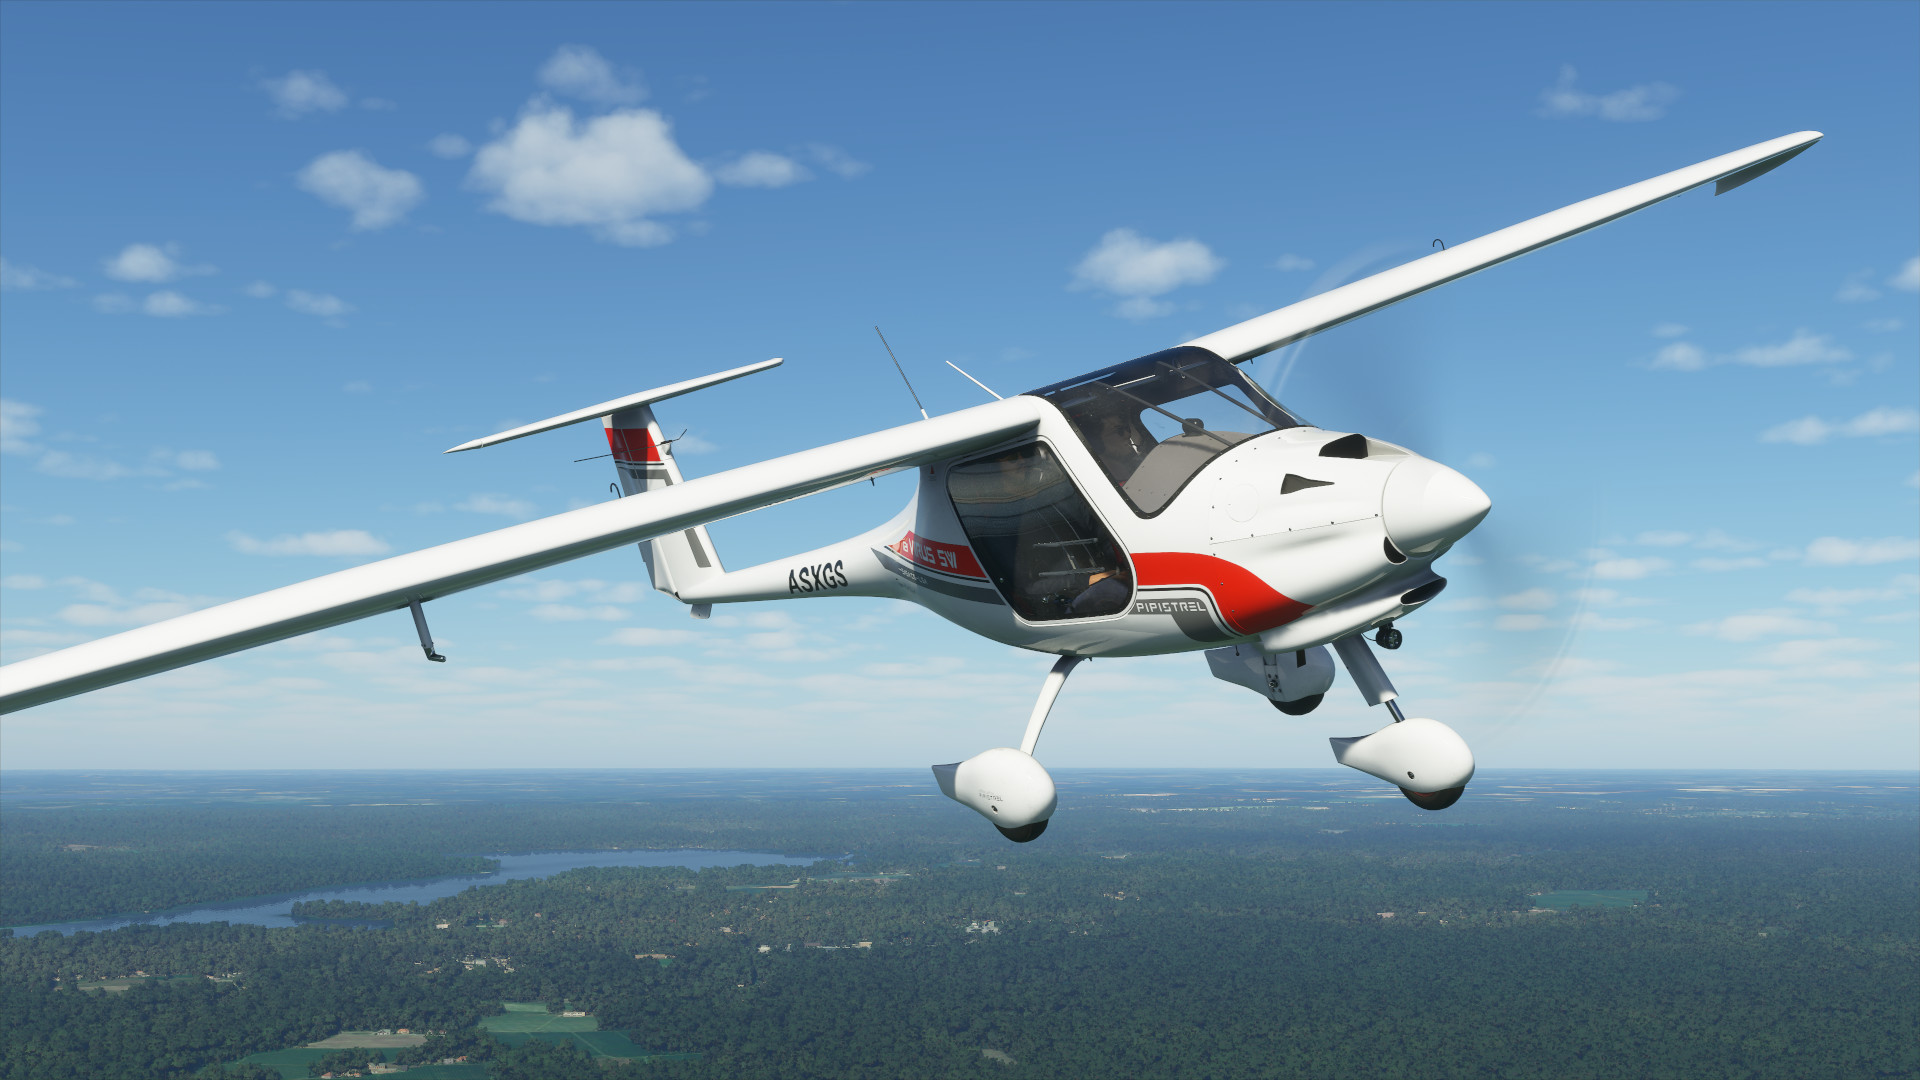 Η πρώτη ενημέρωση κώδικα του Microsoft Flight Simulator θα κυκλοφορήσει την επόμενη εβδομάδα. Δημοσιεύτηκαν προκαταρκτικές σημειώσεις